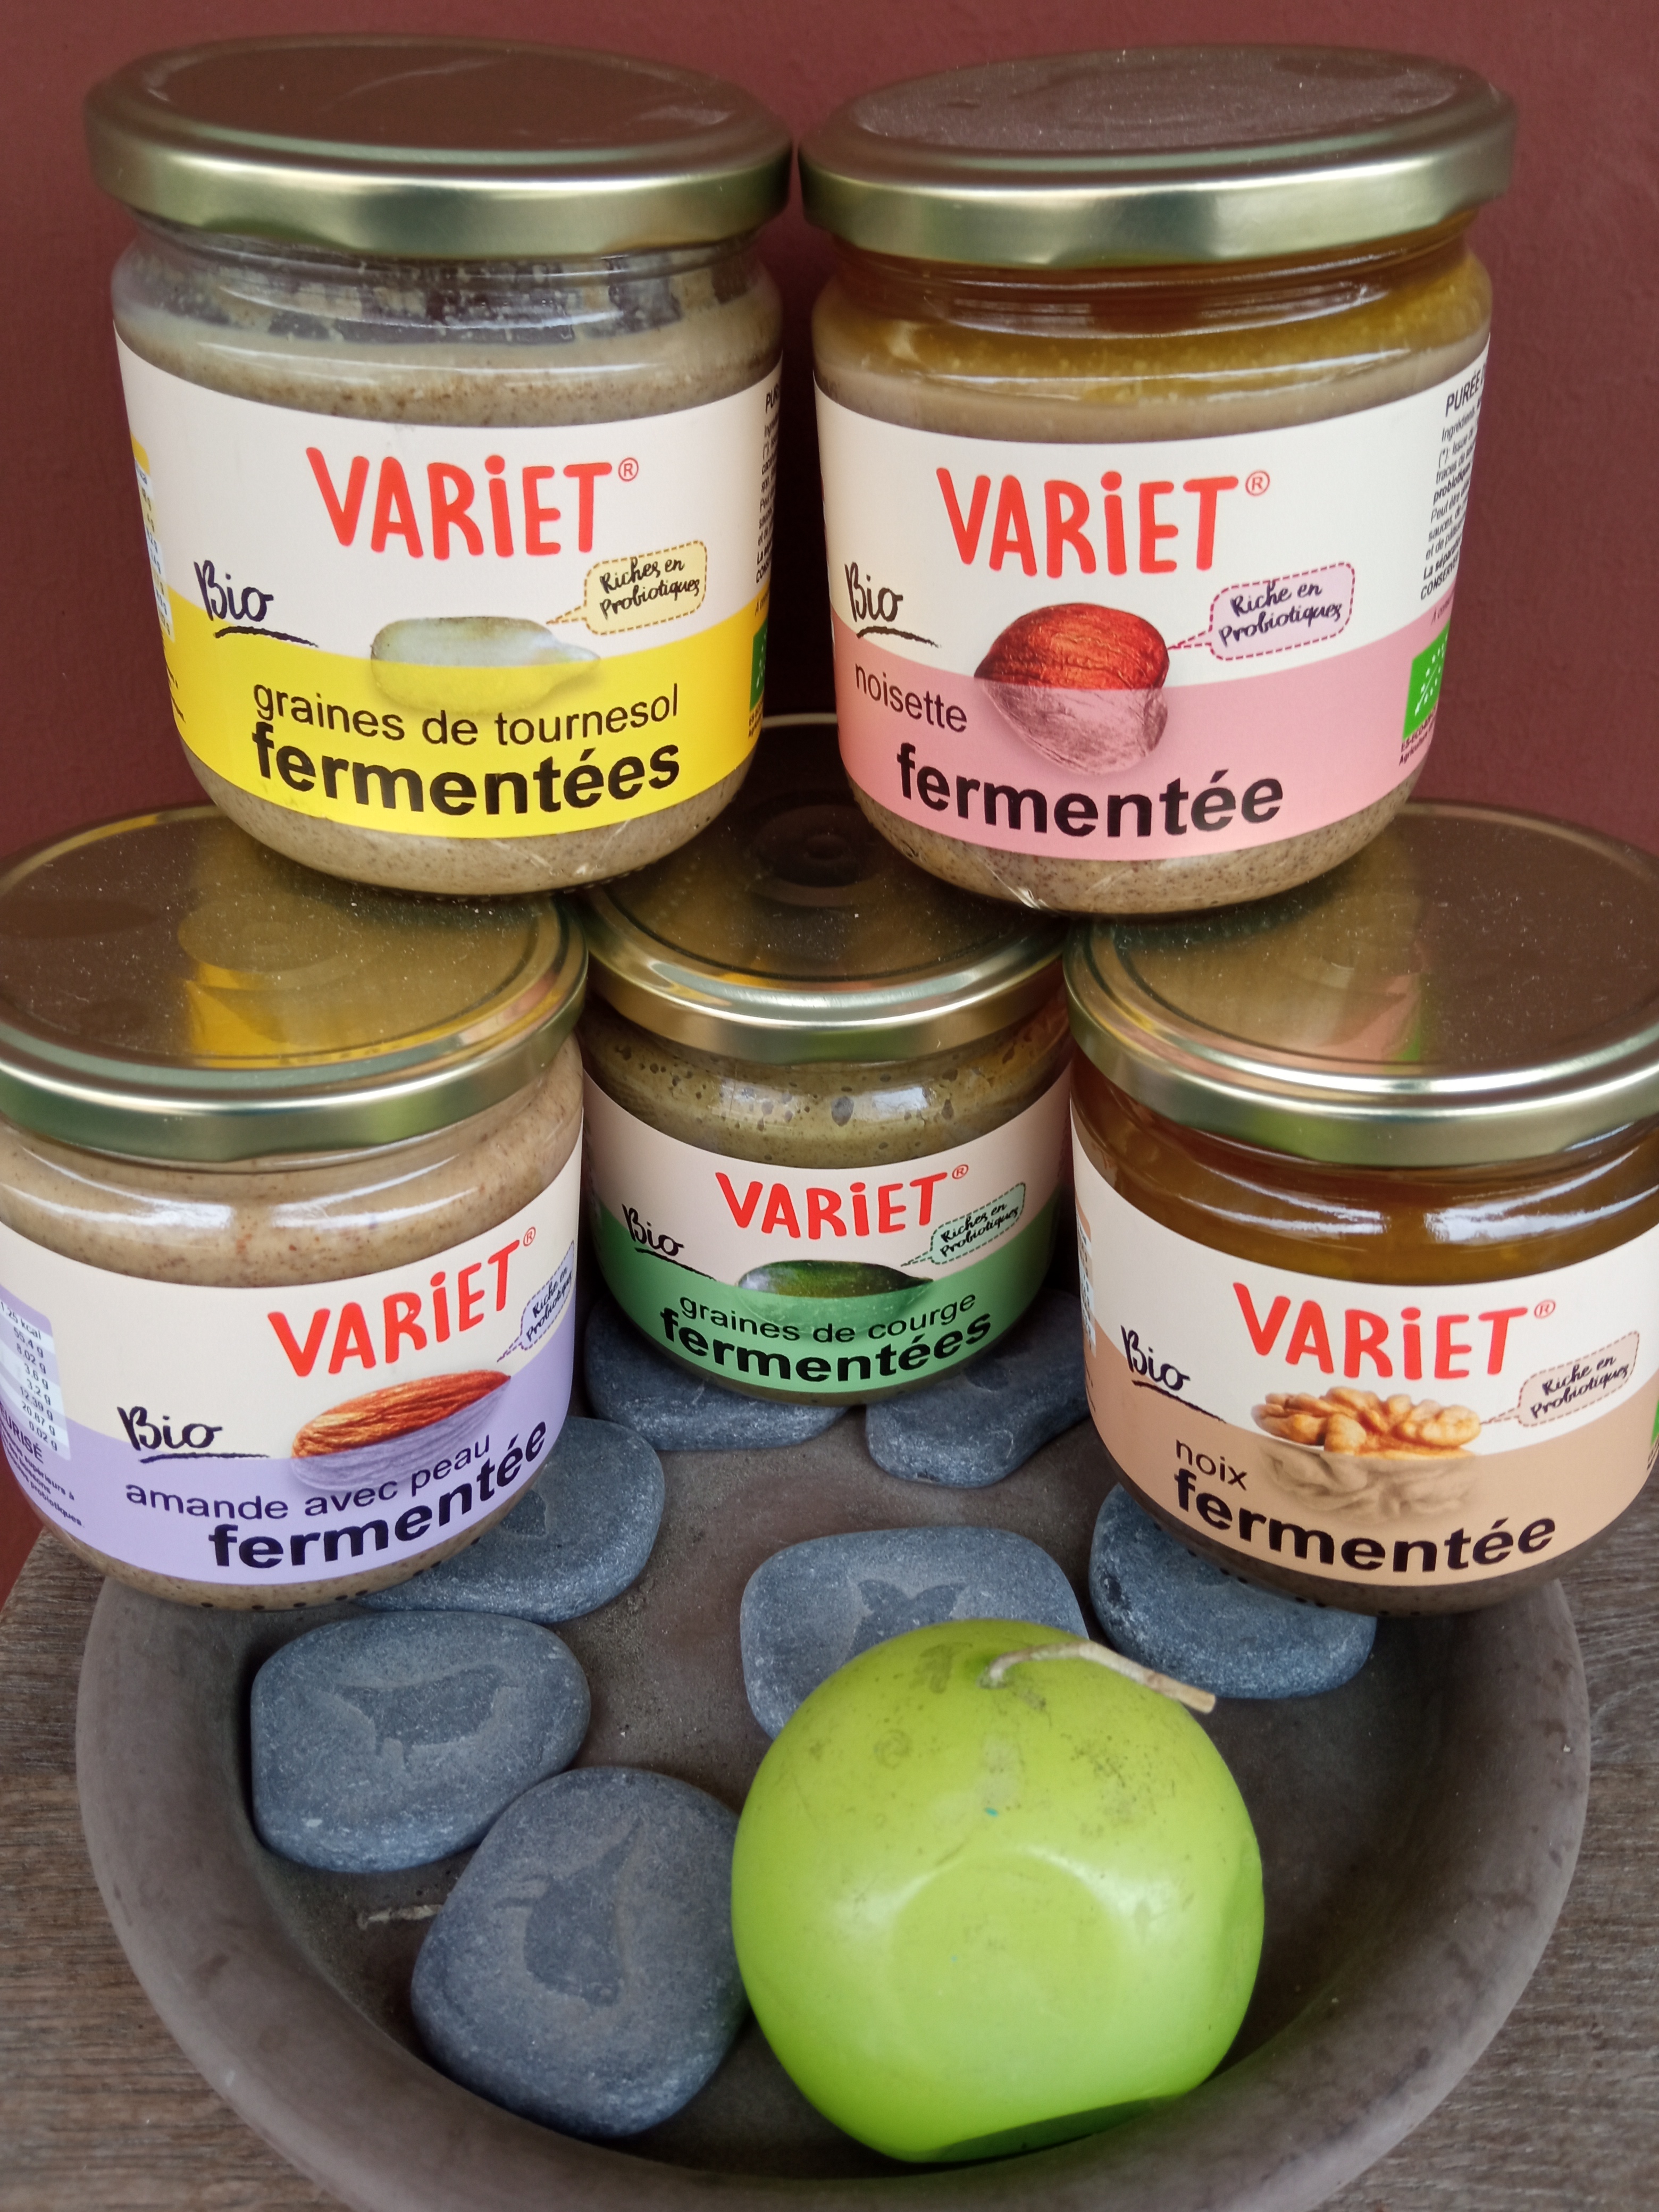 VARIET® -  Gamme des purées de fruits secs et de graines fermentées